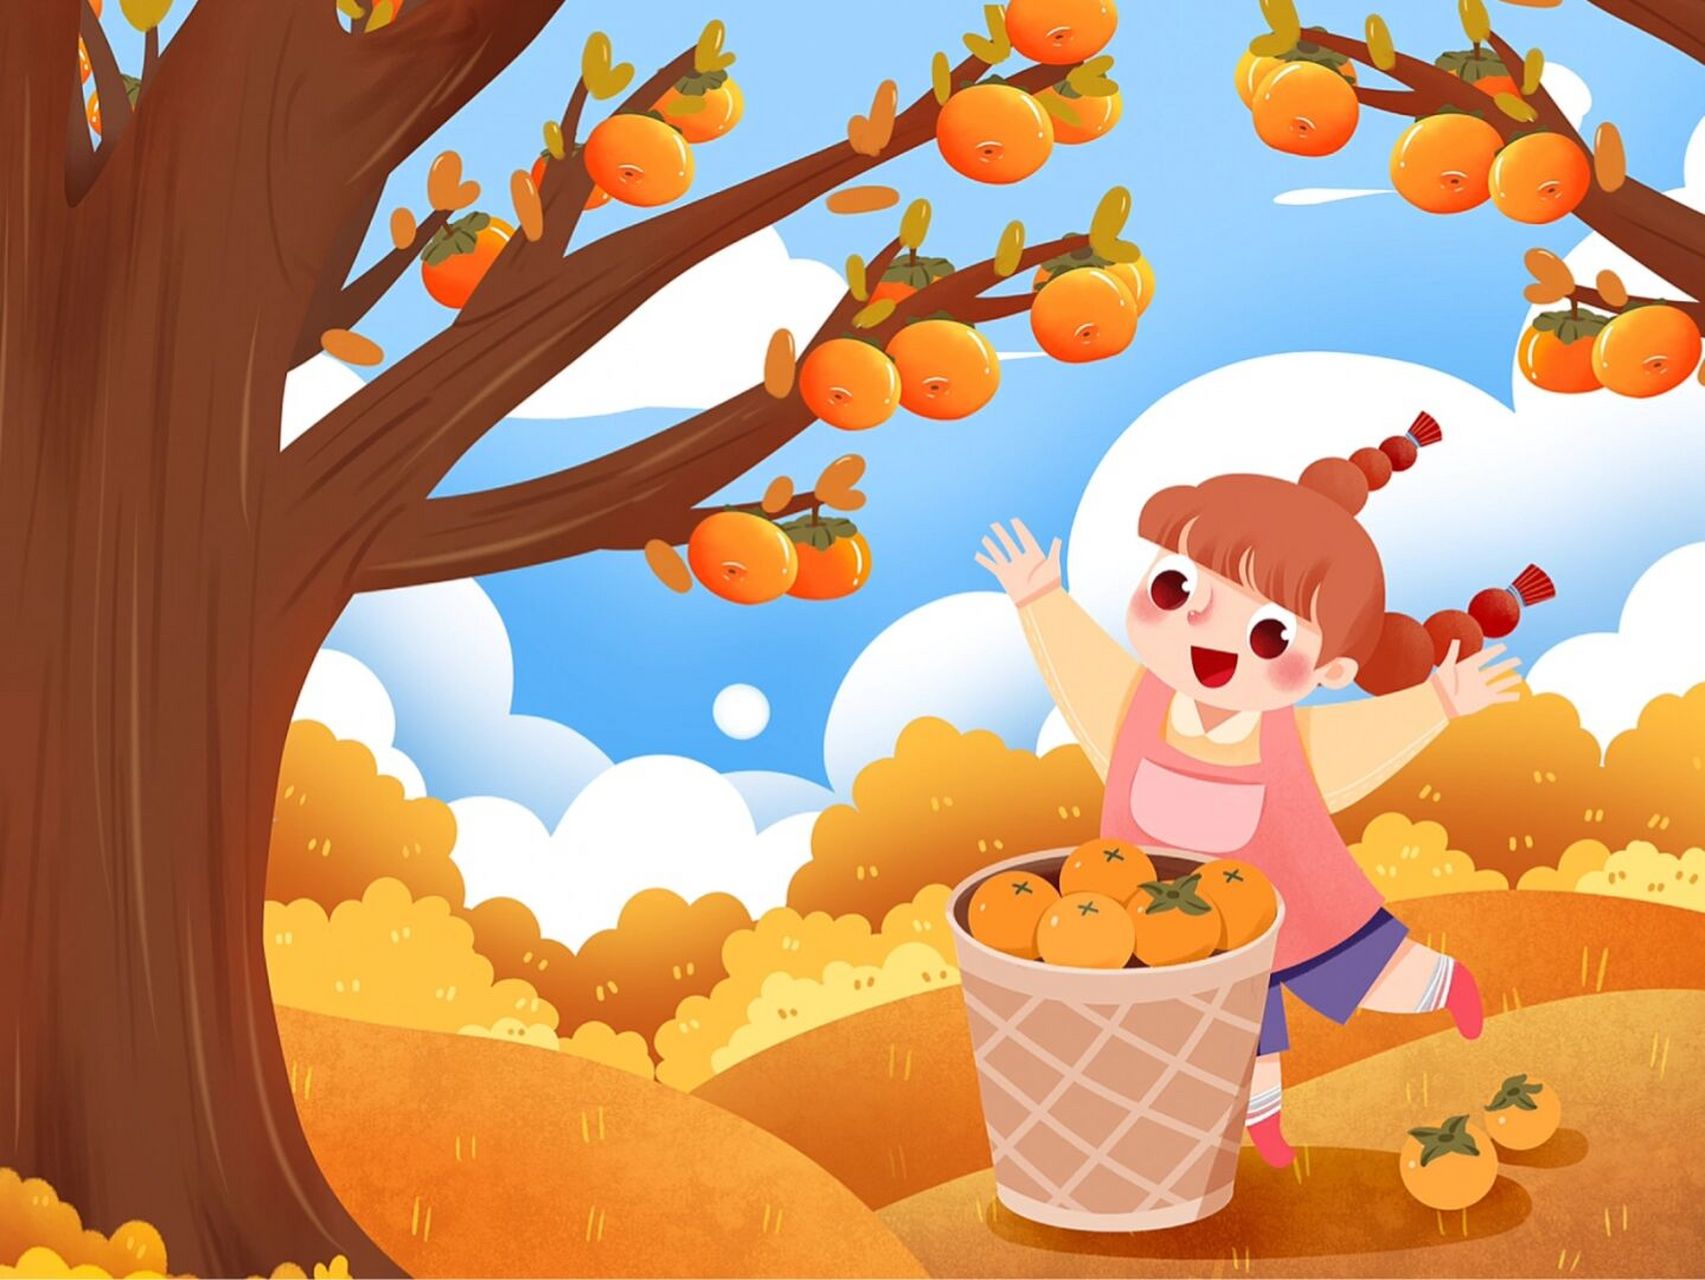 秋天里最快乐的生活是丰收 93秋天了,枫叶红,果实熟,猪肥,羊胖